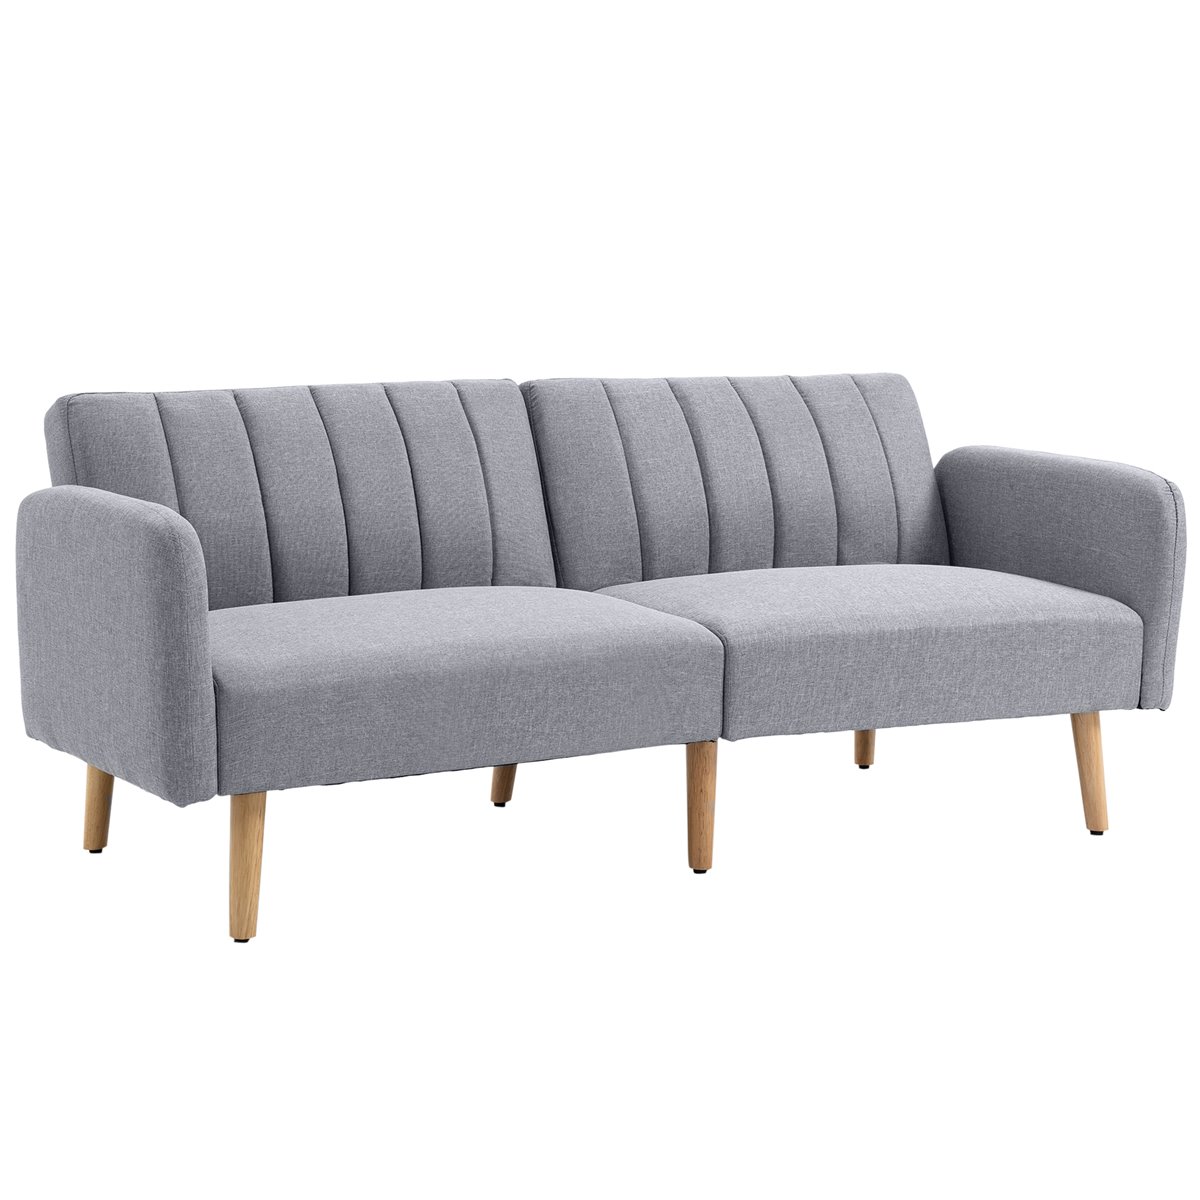 Sofá moderno con reposabrazos cuadrados ajustables de tela similar al lino,  color negro